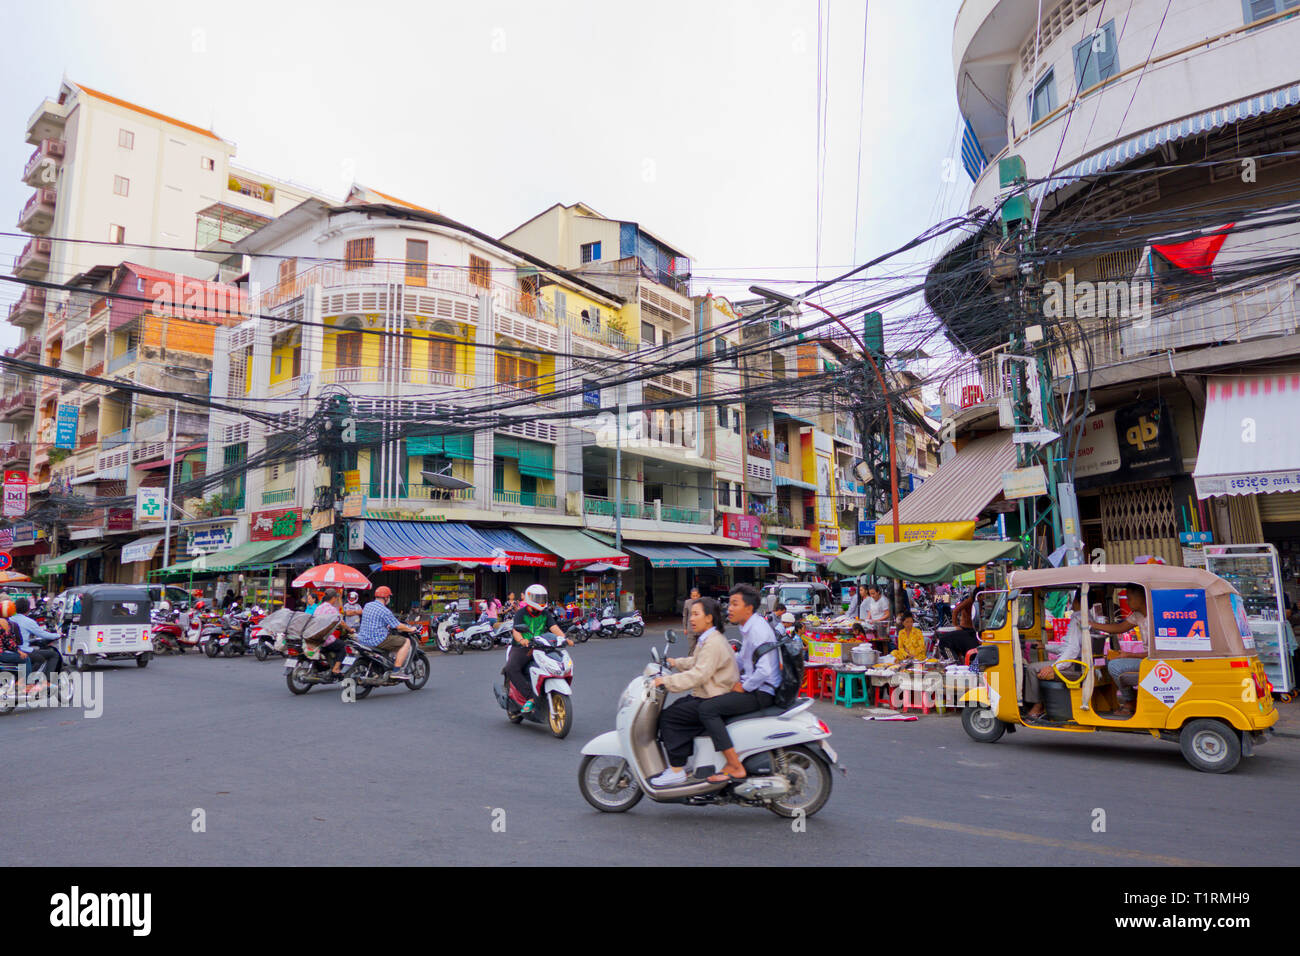 Angolo di 13 street e 110 strade, Phnom Penh, Cambogia, Asia Foto Stock